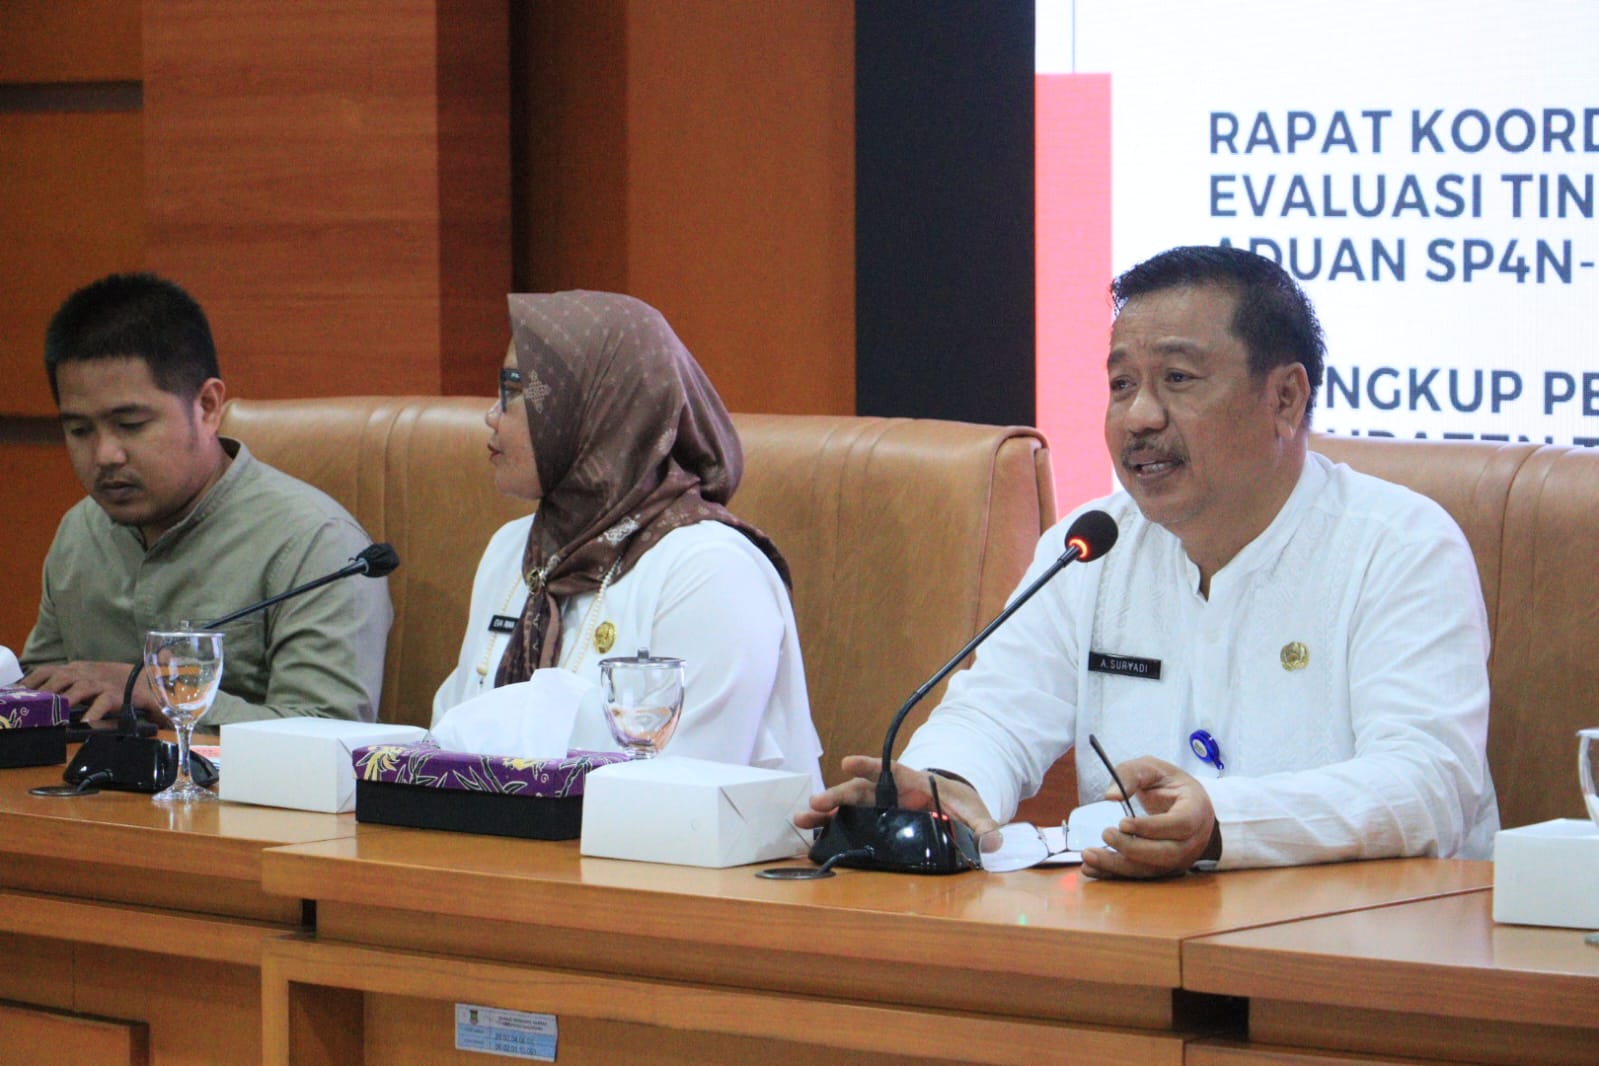 OPD di Kabupaten Tangerang Harus Respon Aduan Warga di SP4N-LAPOR! Kurang Dari 2x24 Jam